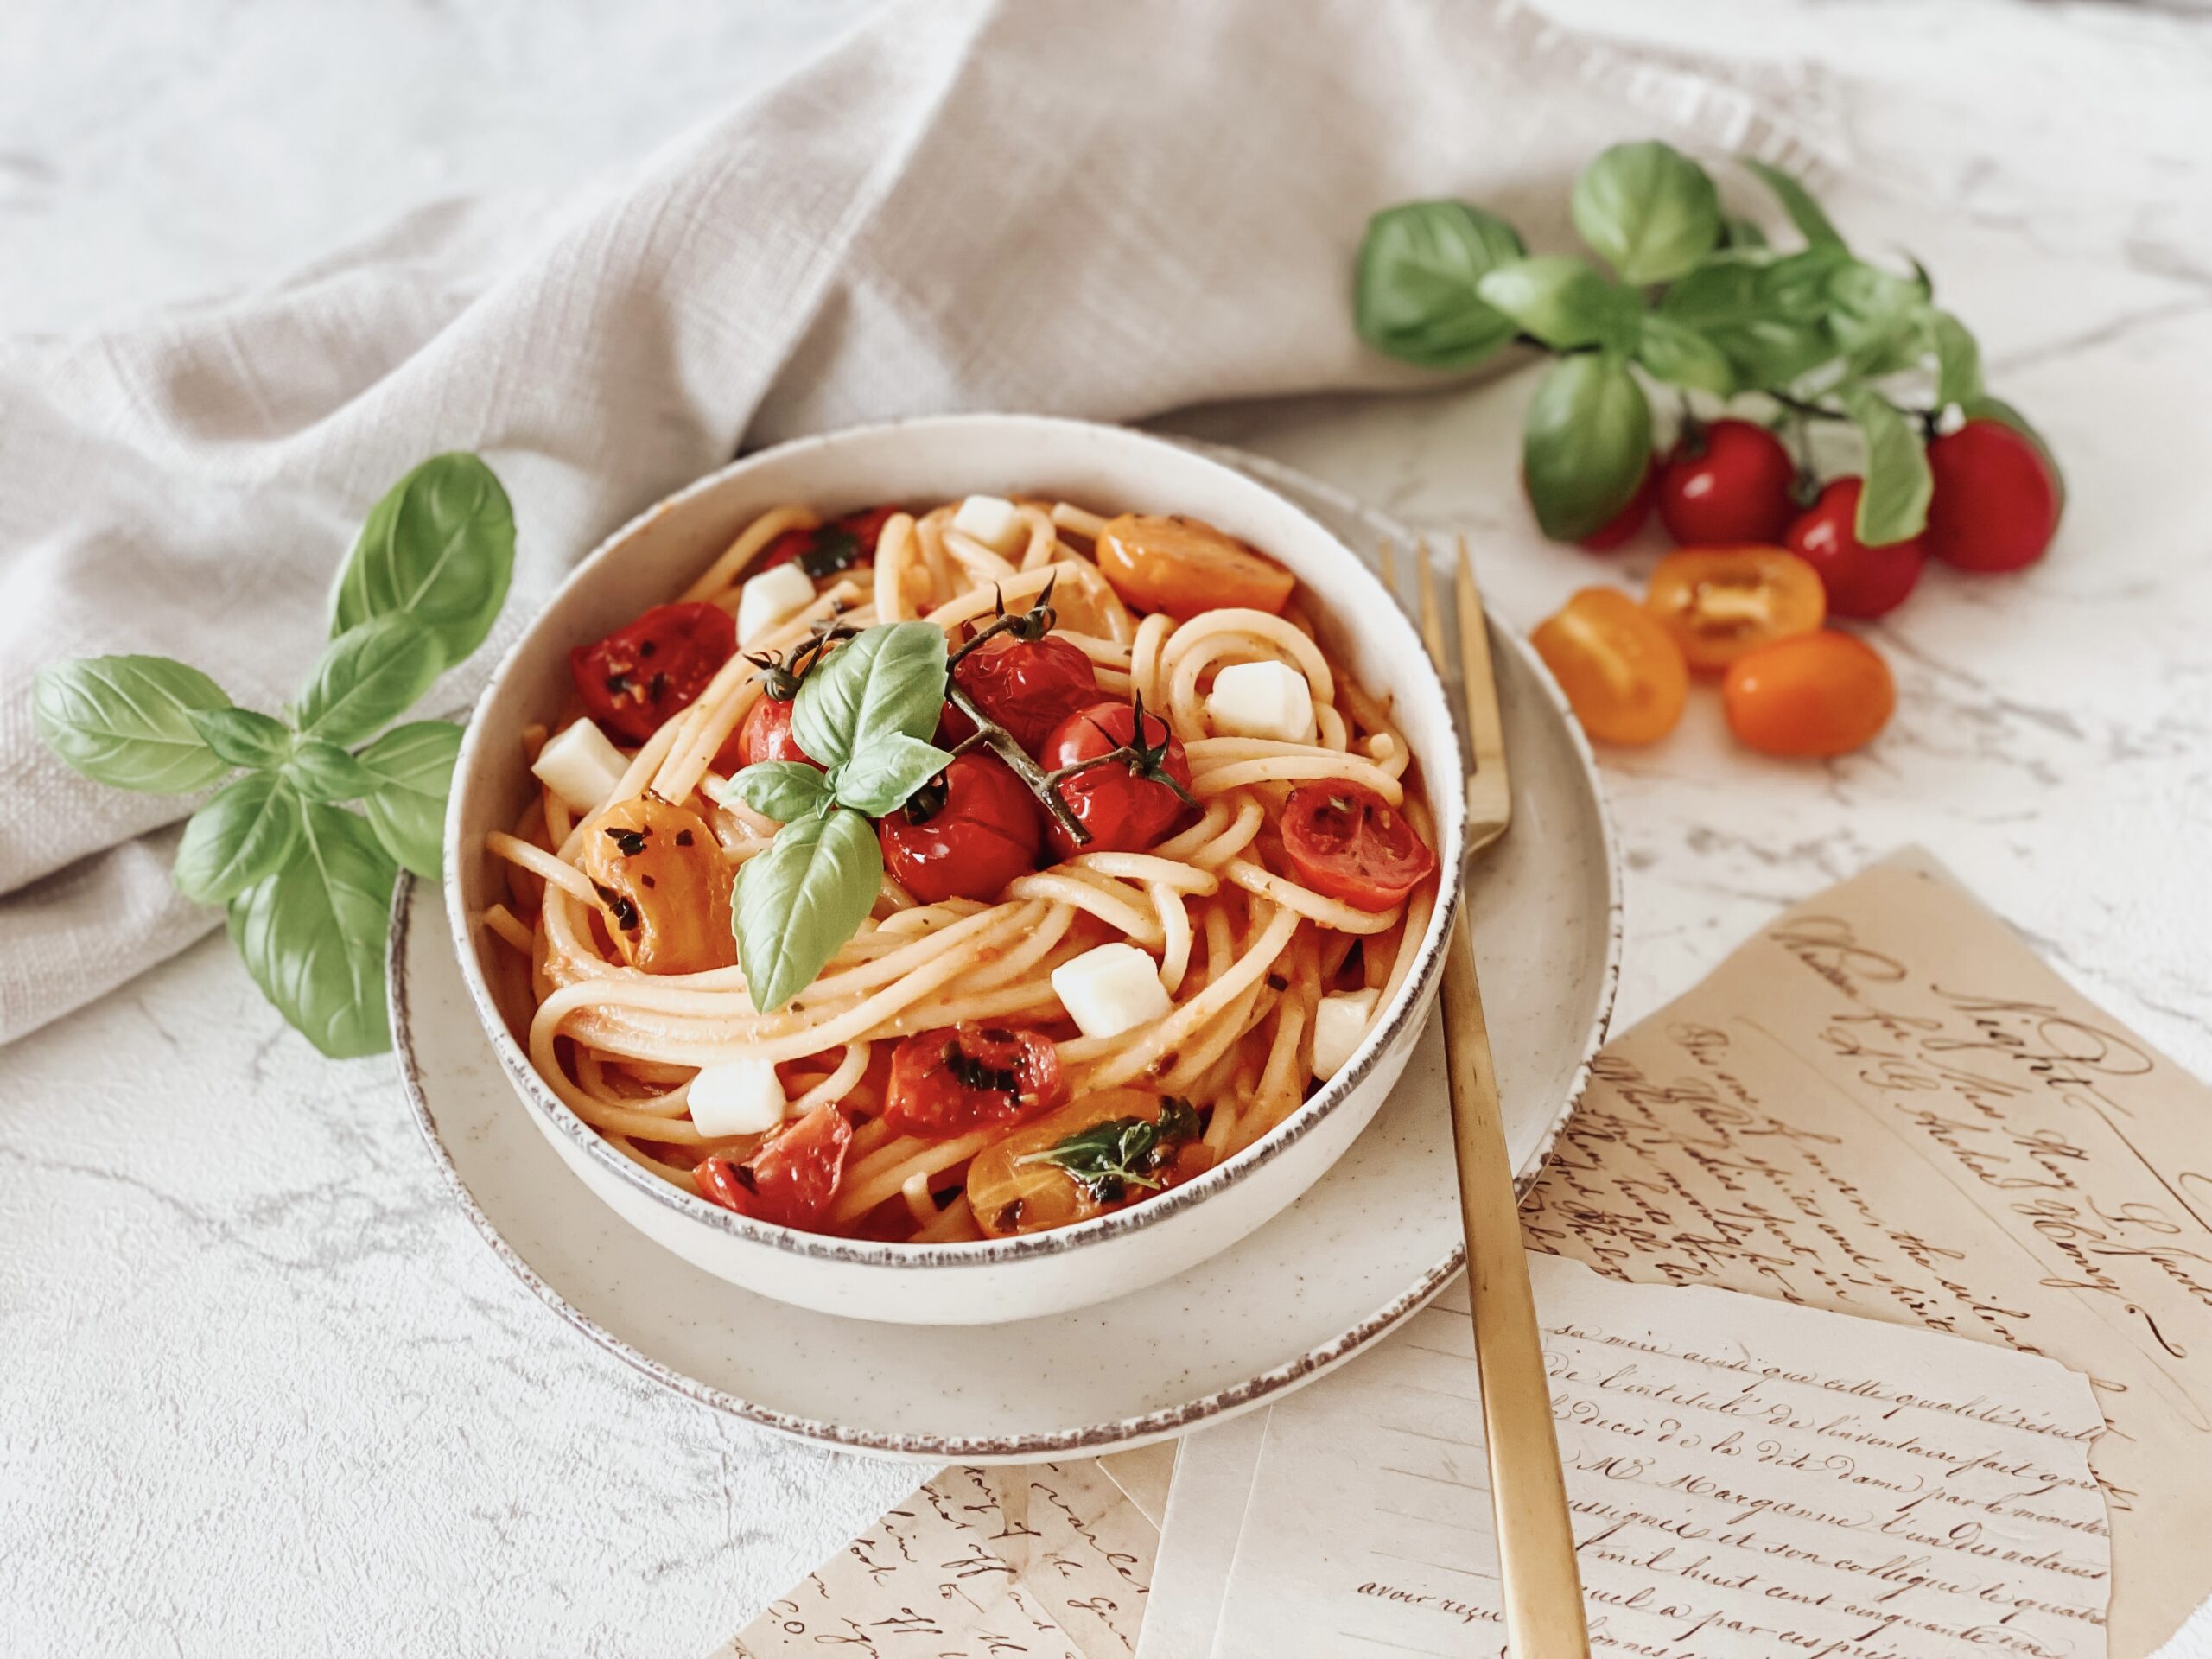 Spaghetti in cremiger Tomaten-Mozzarella-Sauce